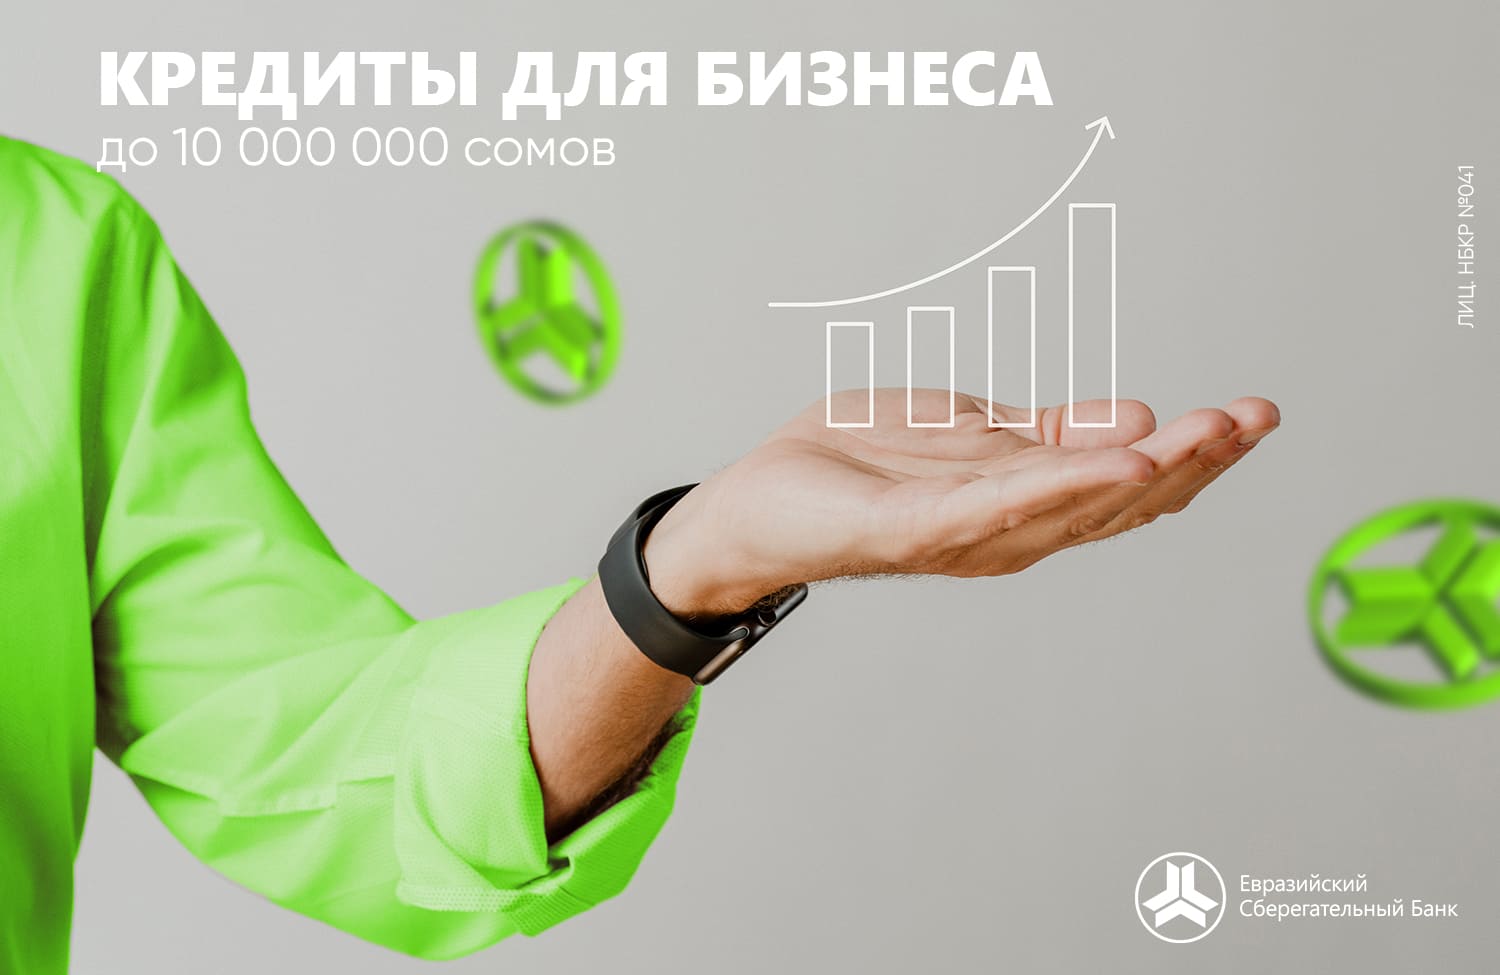 Уважаемые клиенты, в Евразийском Сберегательном Банке есть решение для развития Вашего бизнеса!